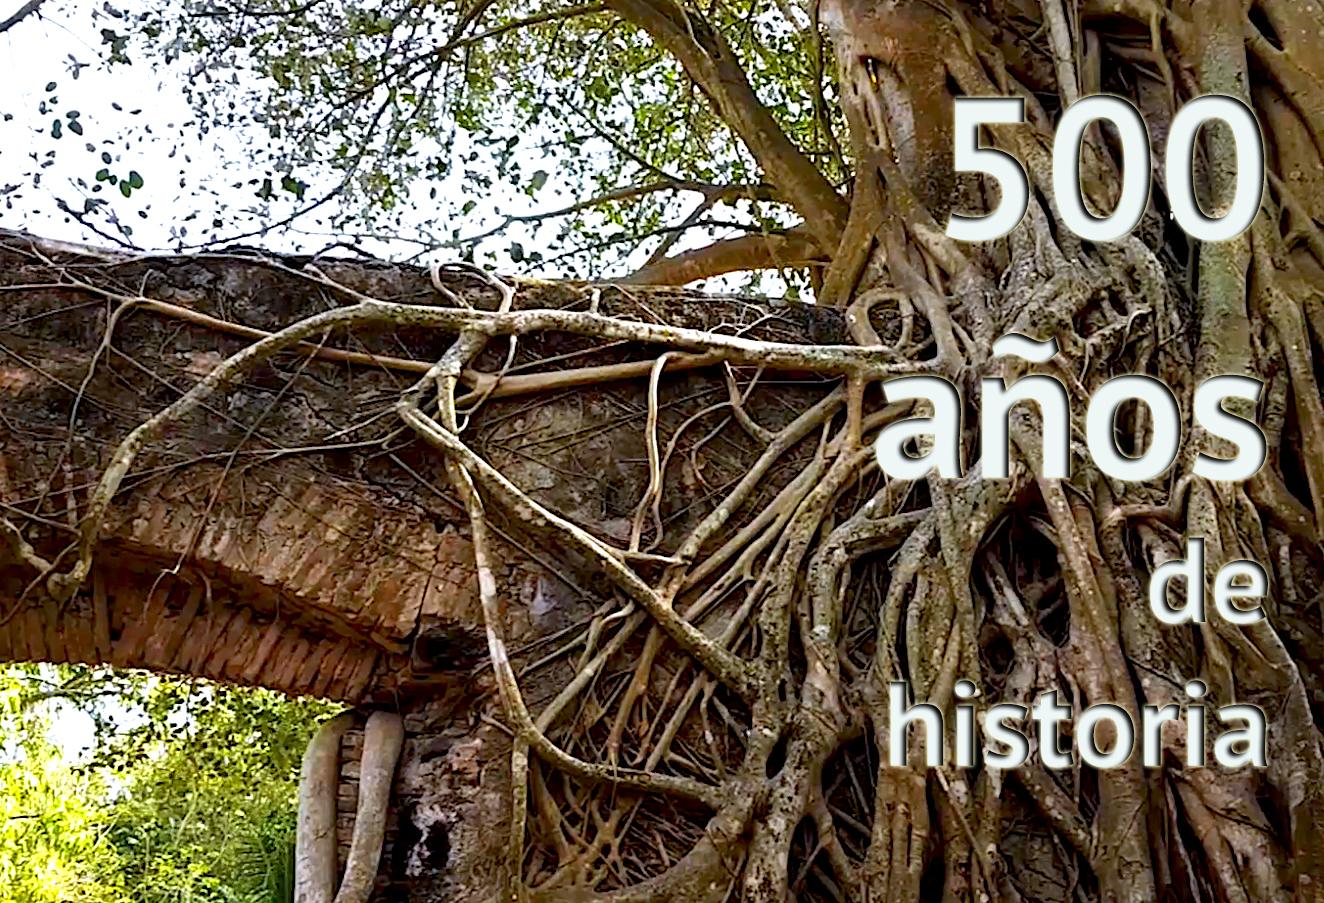 500 años de historia 